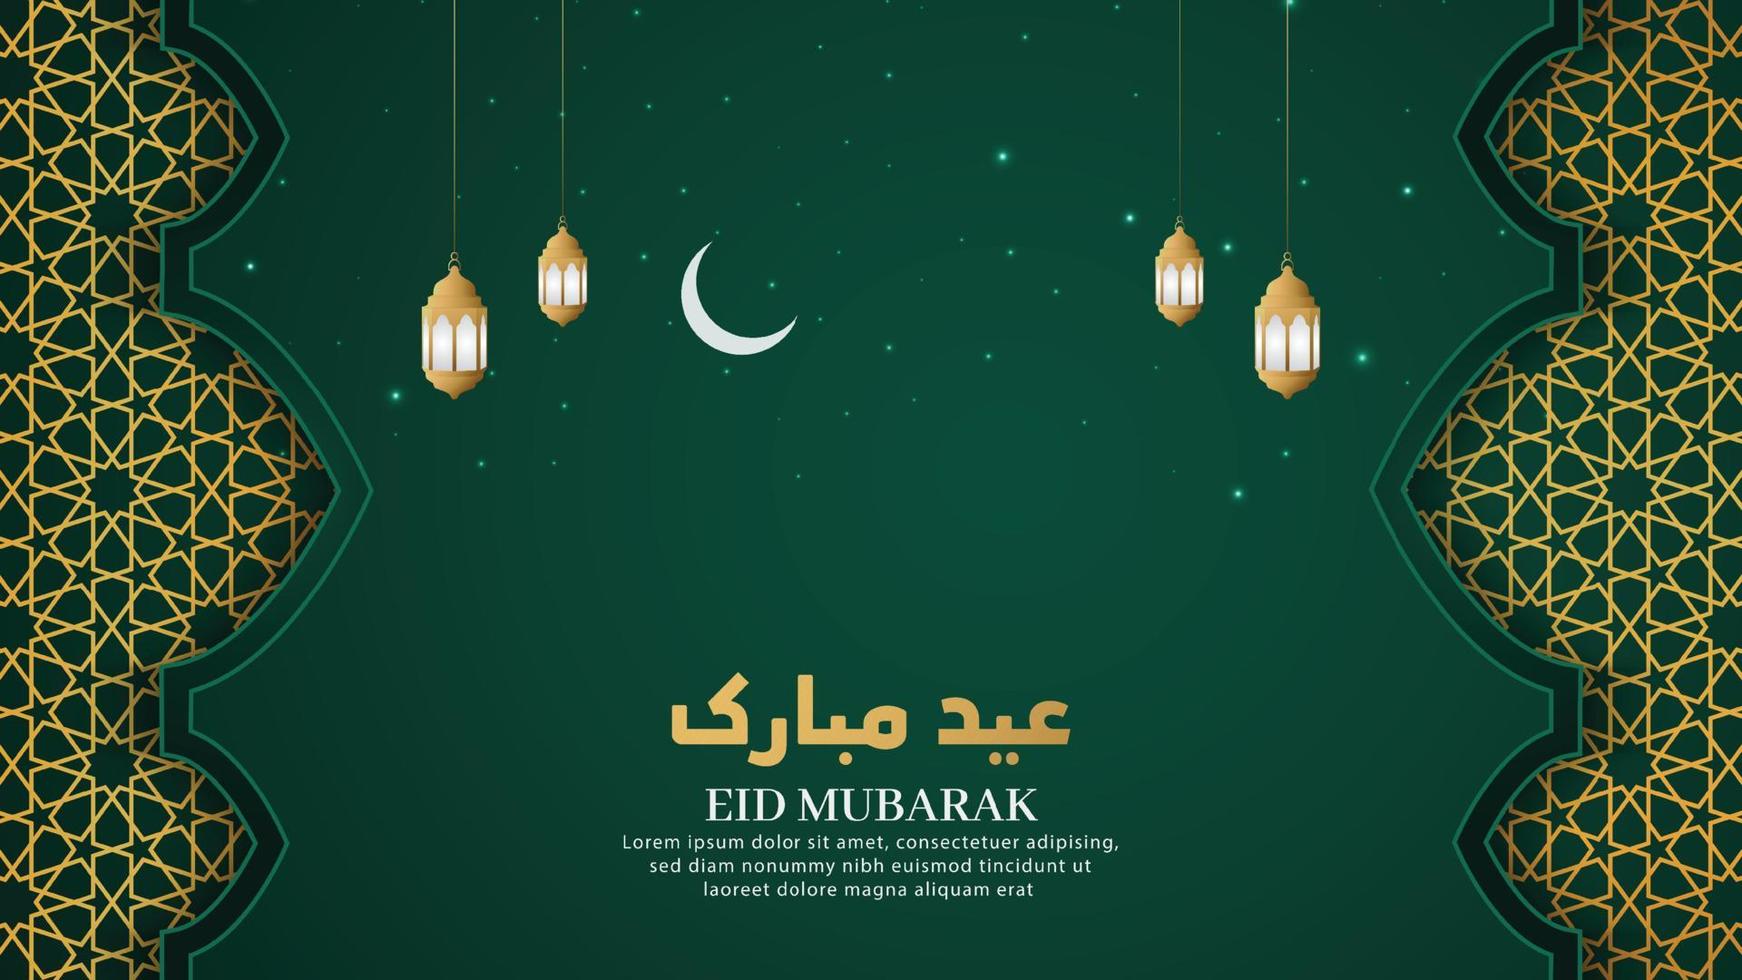 eid mubarak fondo de lujo verde árabe islámico con patrón geométrico y hermoso adorno con linternas vector